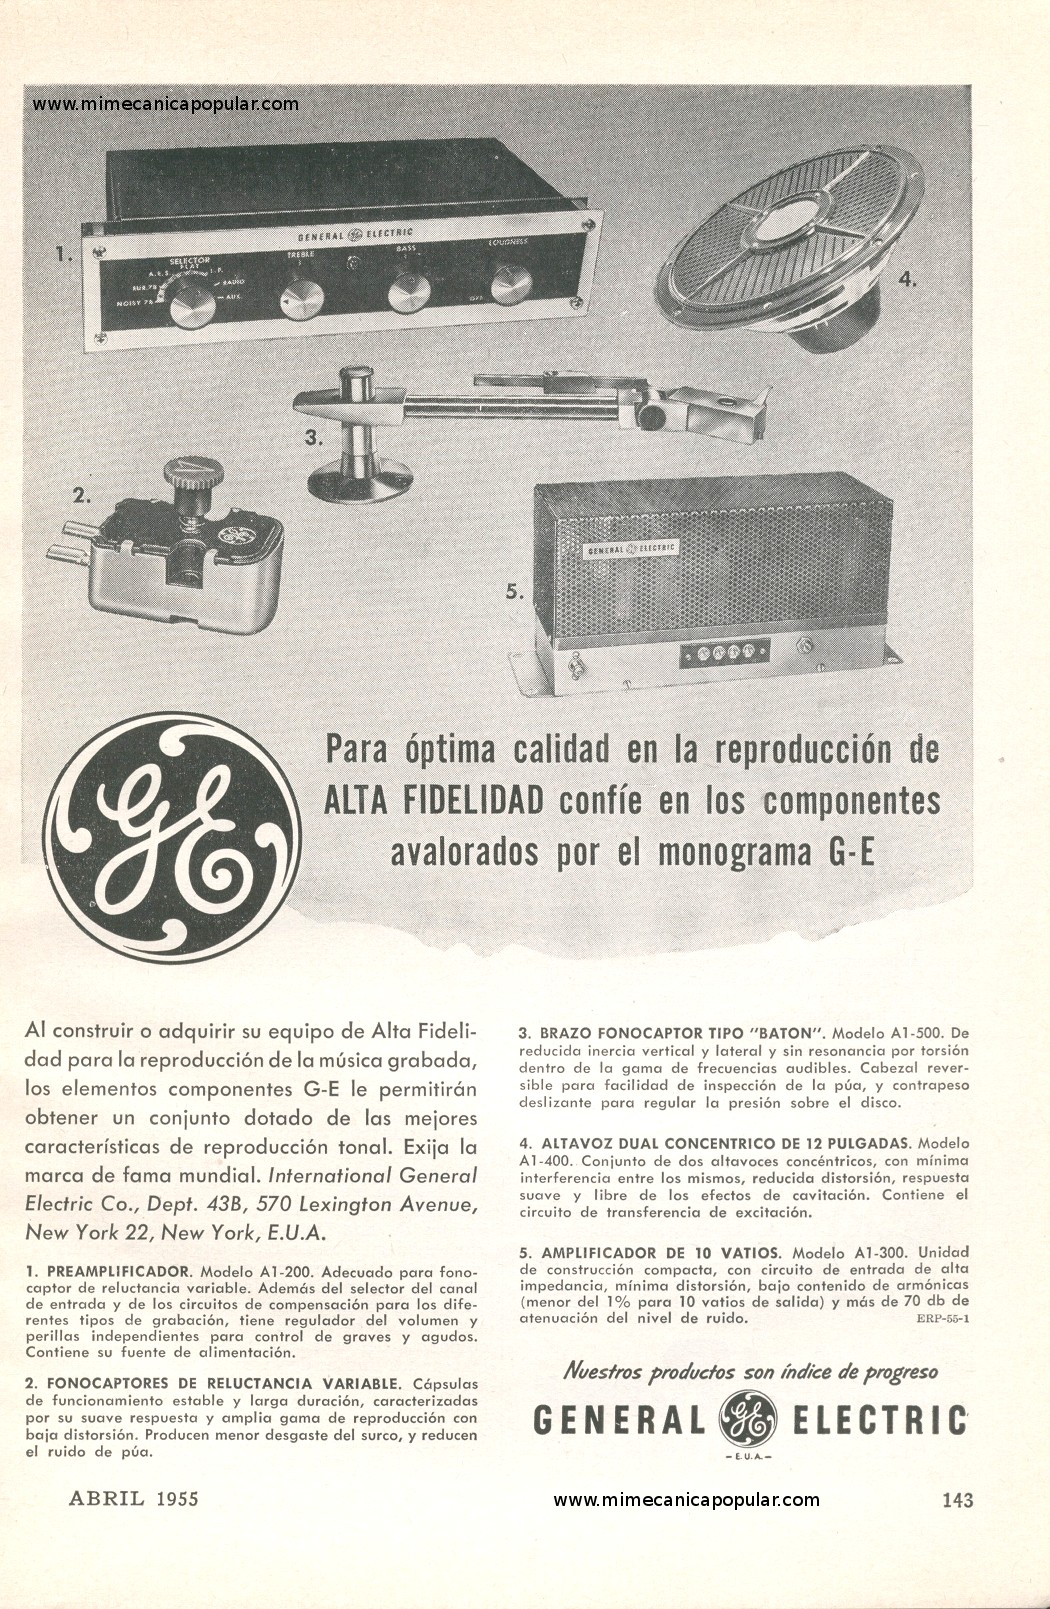 Publicidad - Equipo de Alta Fidelidad General Electric - Abril 1955